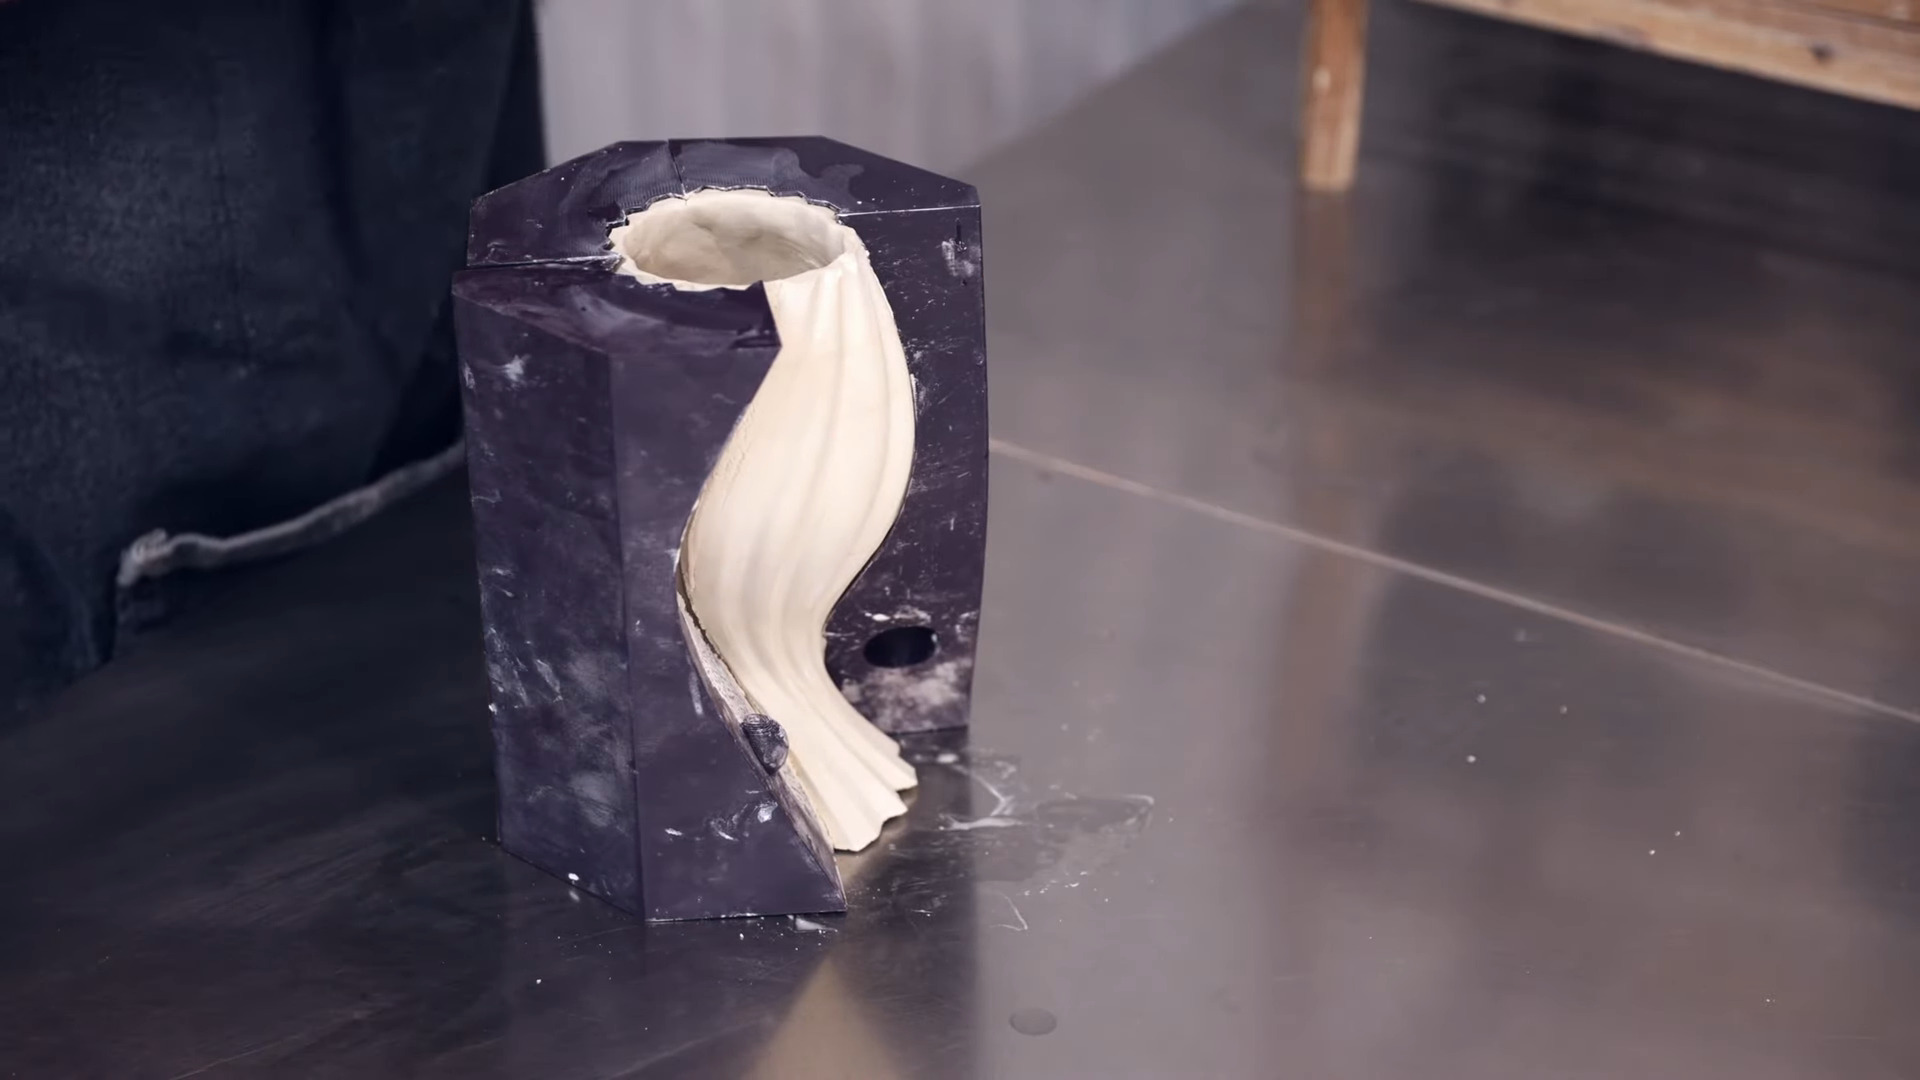 Plaatgieten – een nieuwe manier om 3D-printen en keramiek te combineren